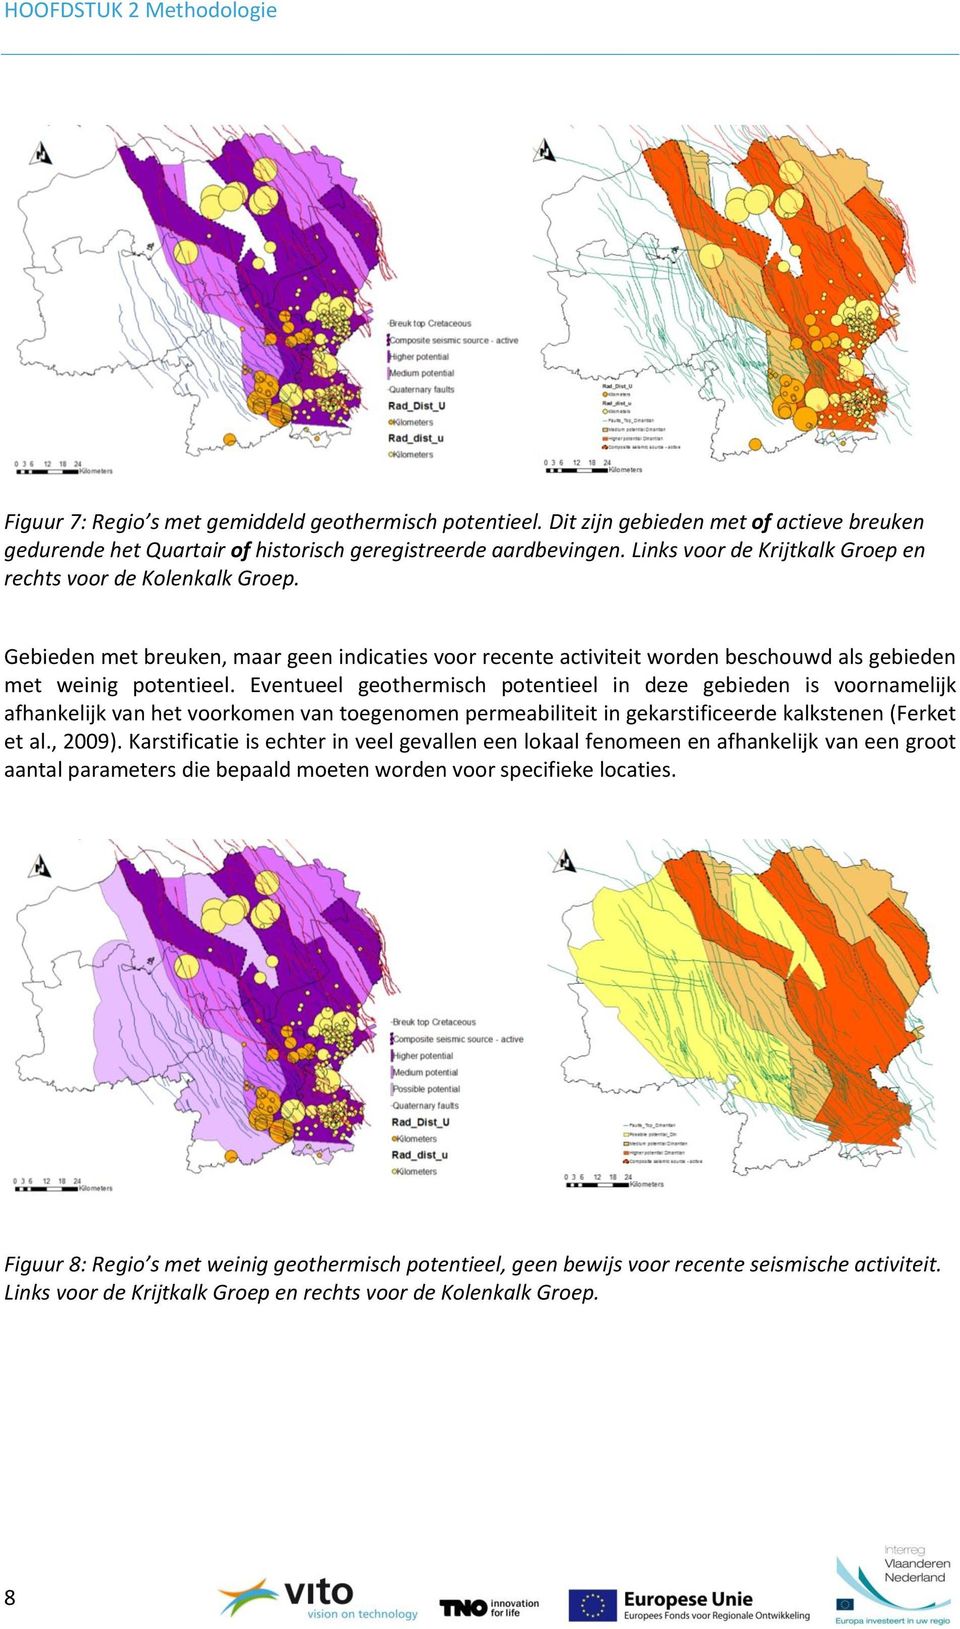 Eventueel geothermisch potentieel in deze gebieden is voornamelijk afhankelijk van het voorkomen van toegenomen permeabiliteit in gekarstificeerde kalkstenen (Ferket et al., 2009).